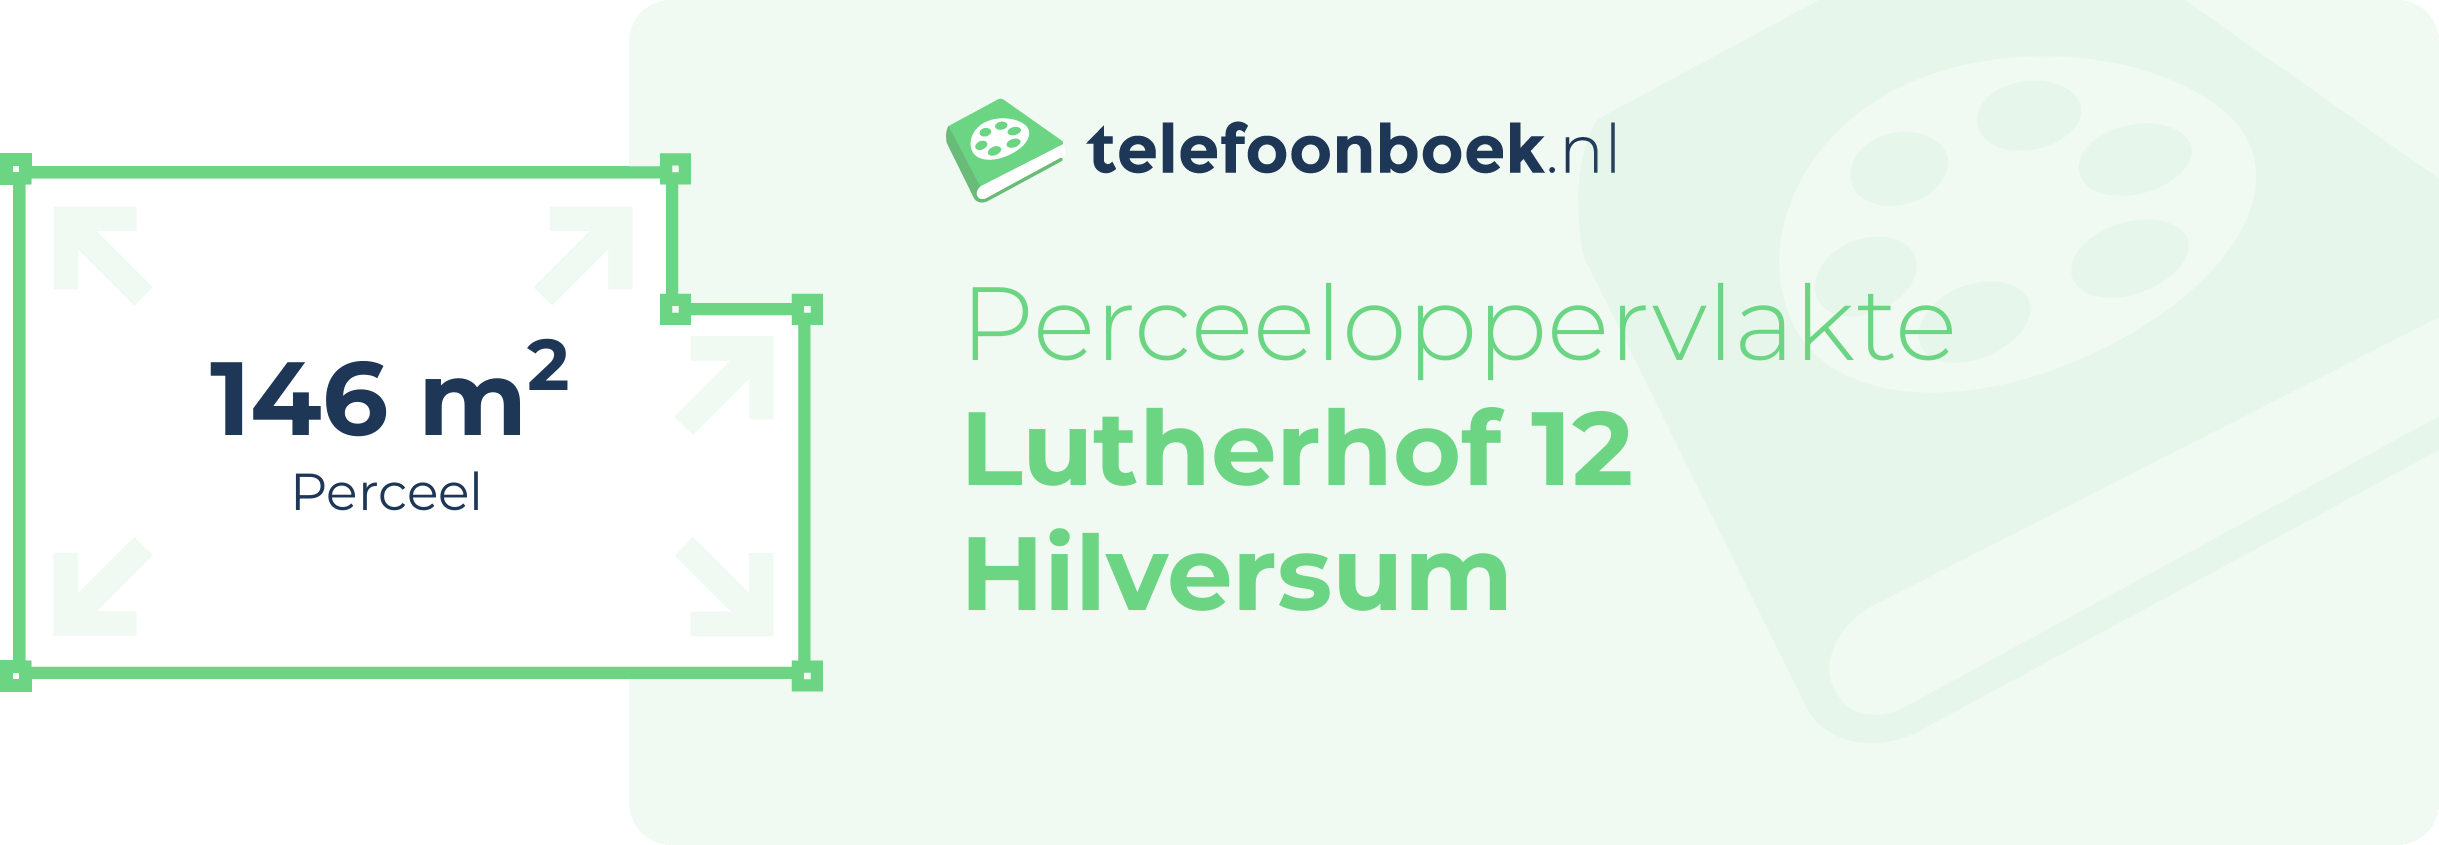 Perceeloppervlakte Lutherhof 12 Hilversum